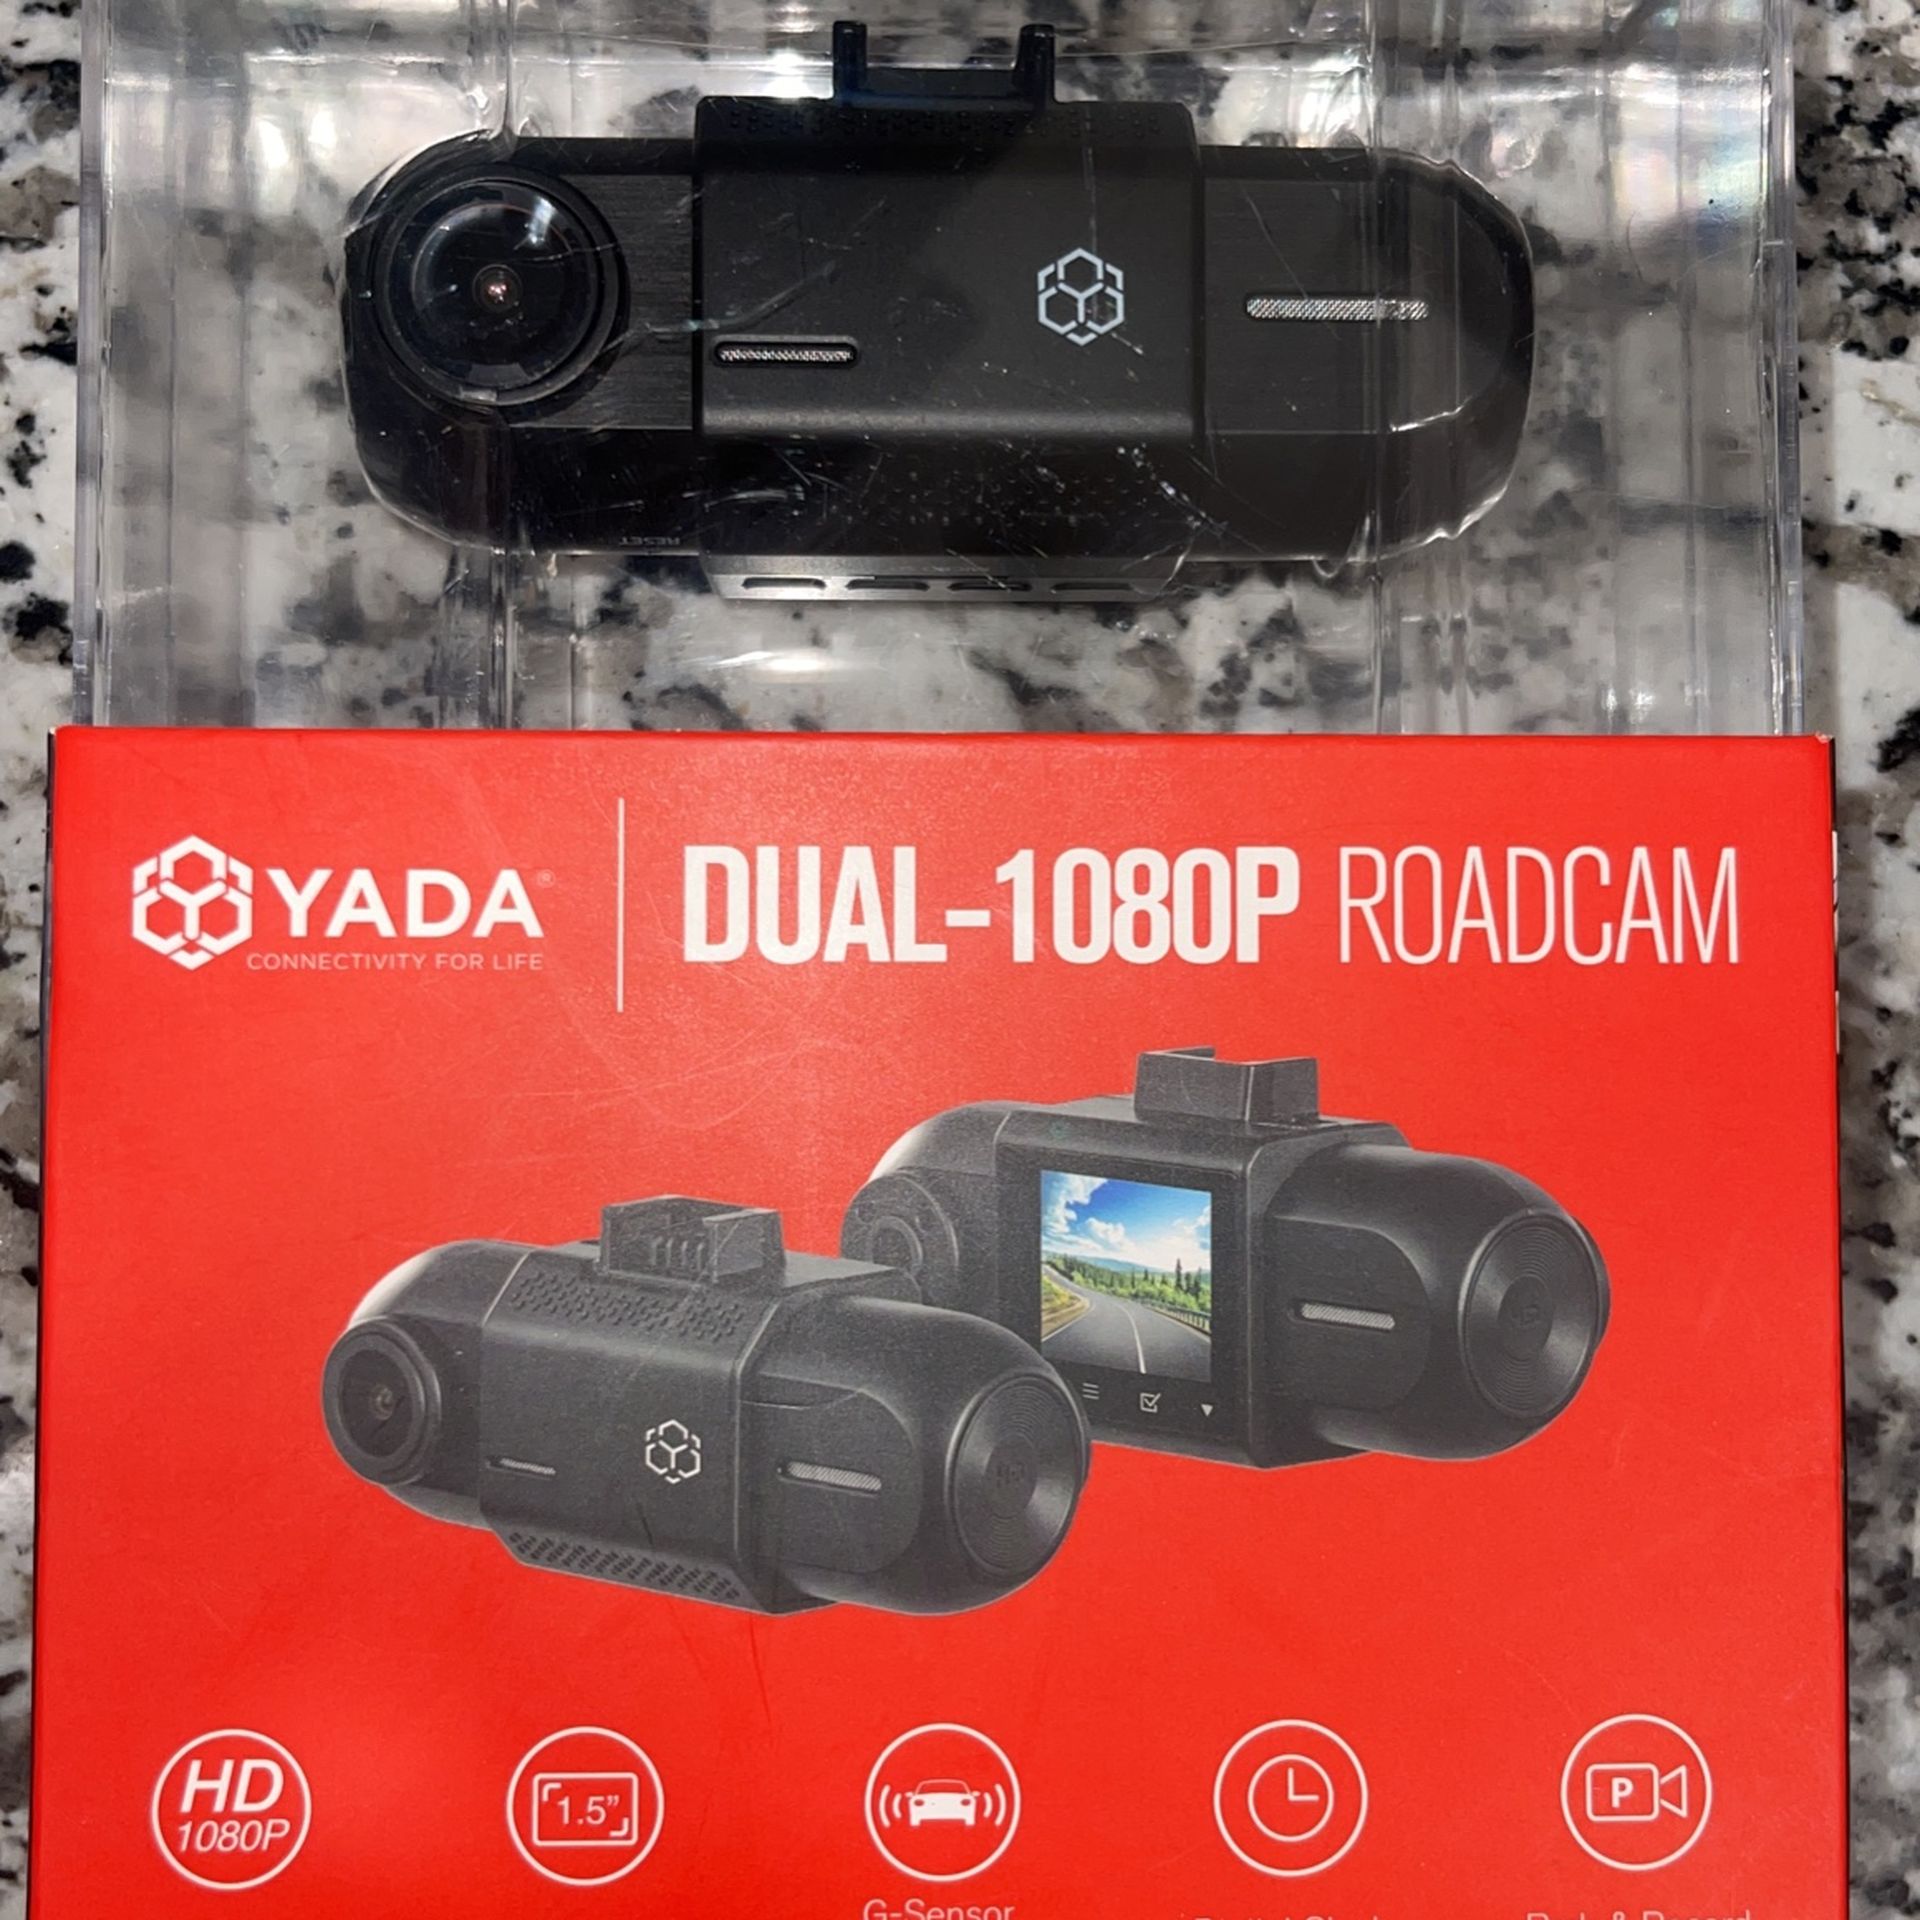 YADA DUAL-1080P ROADCAM